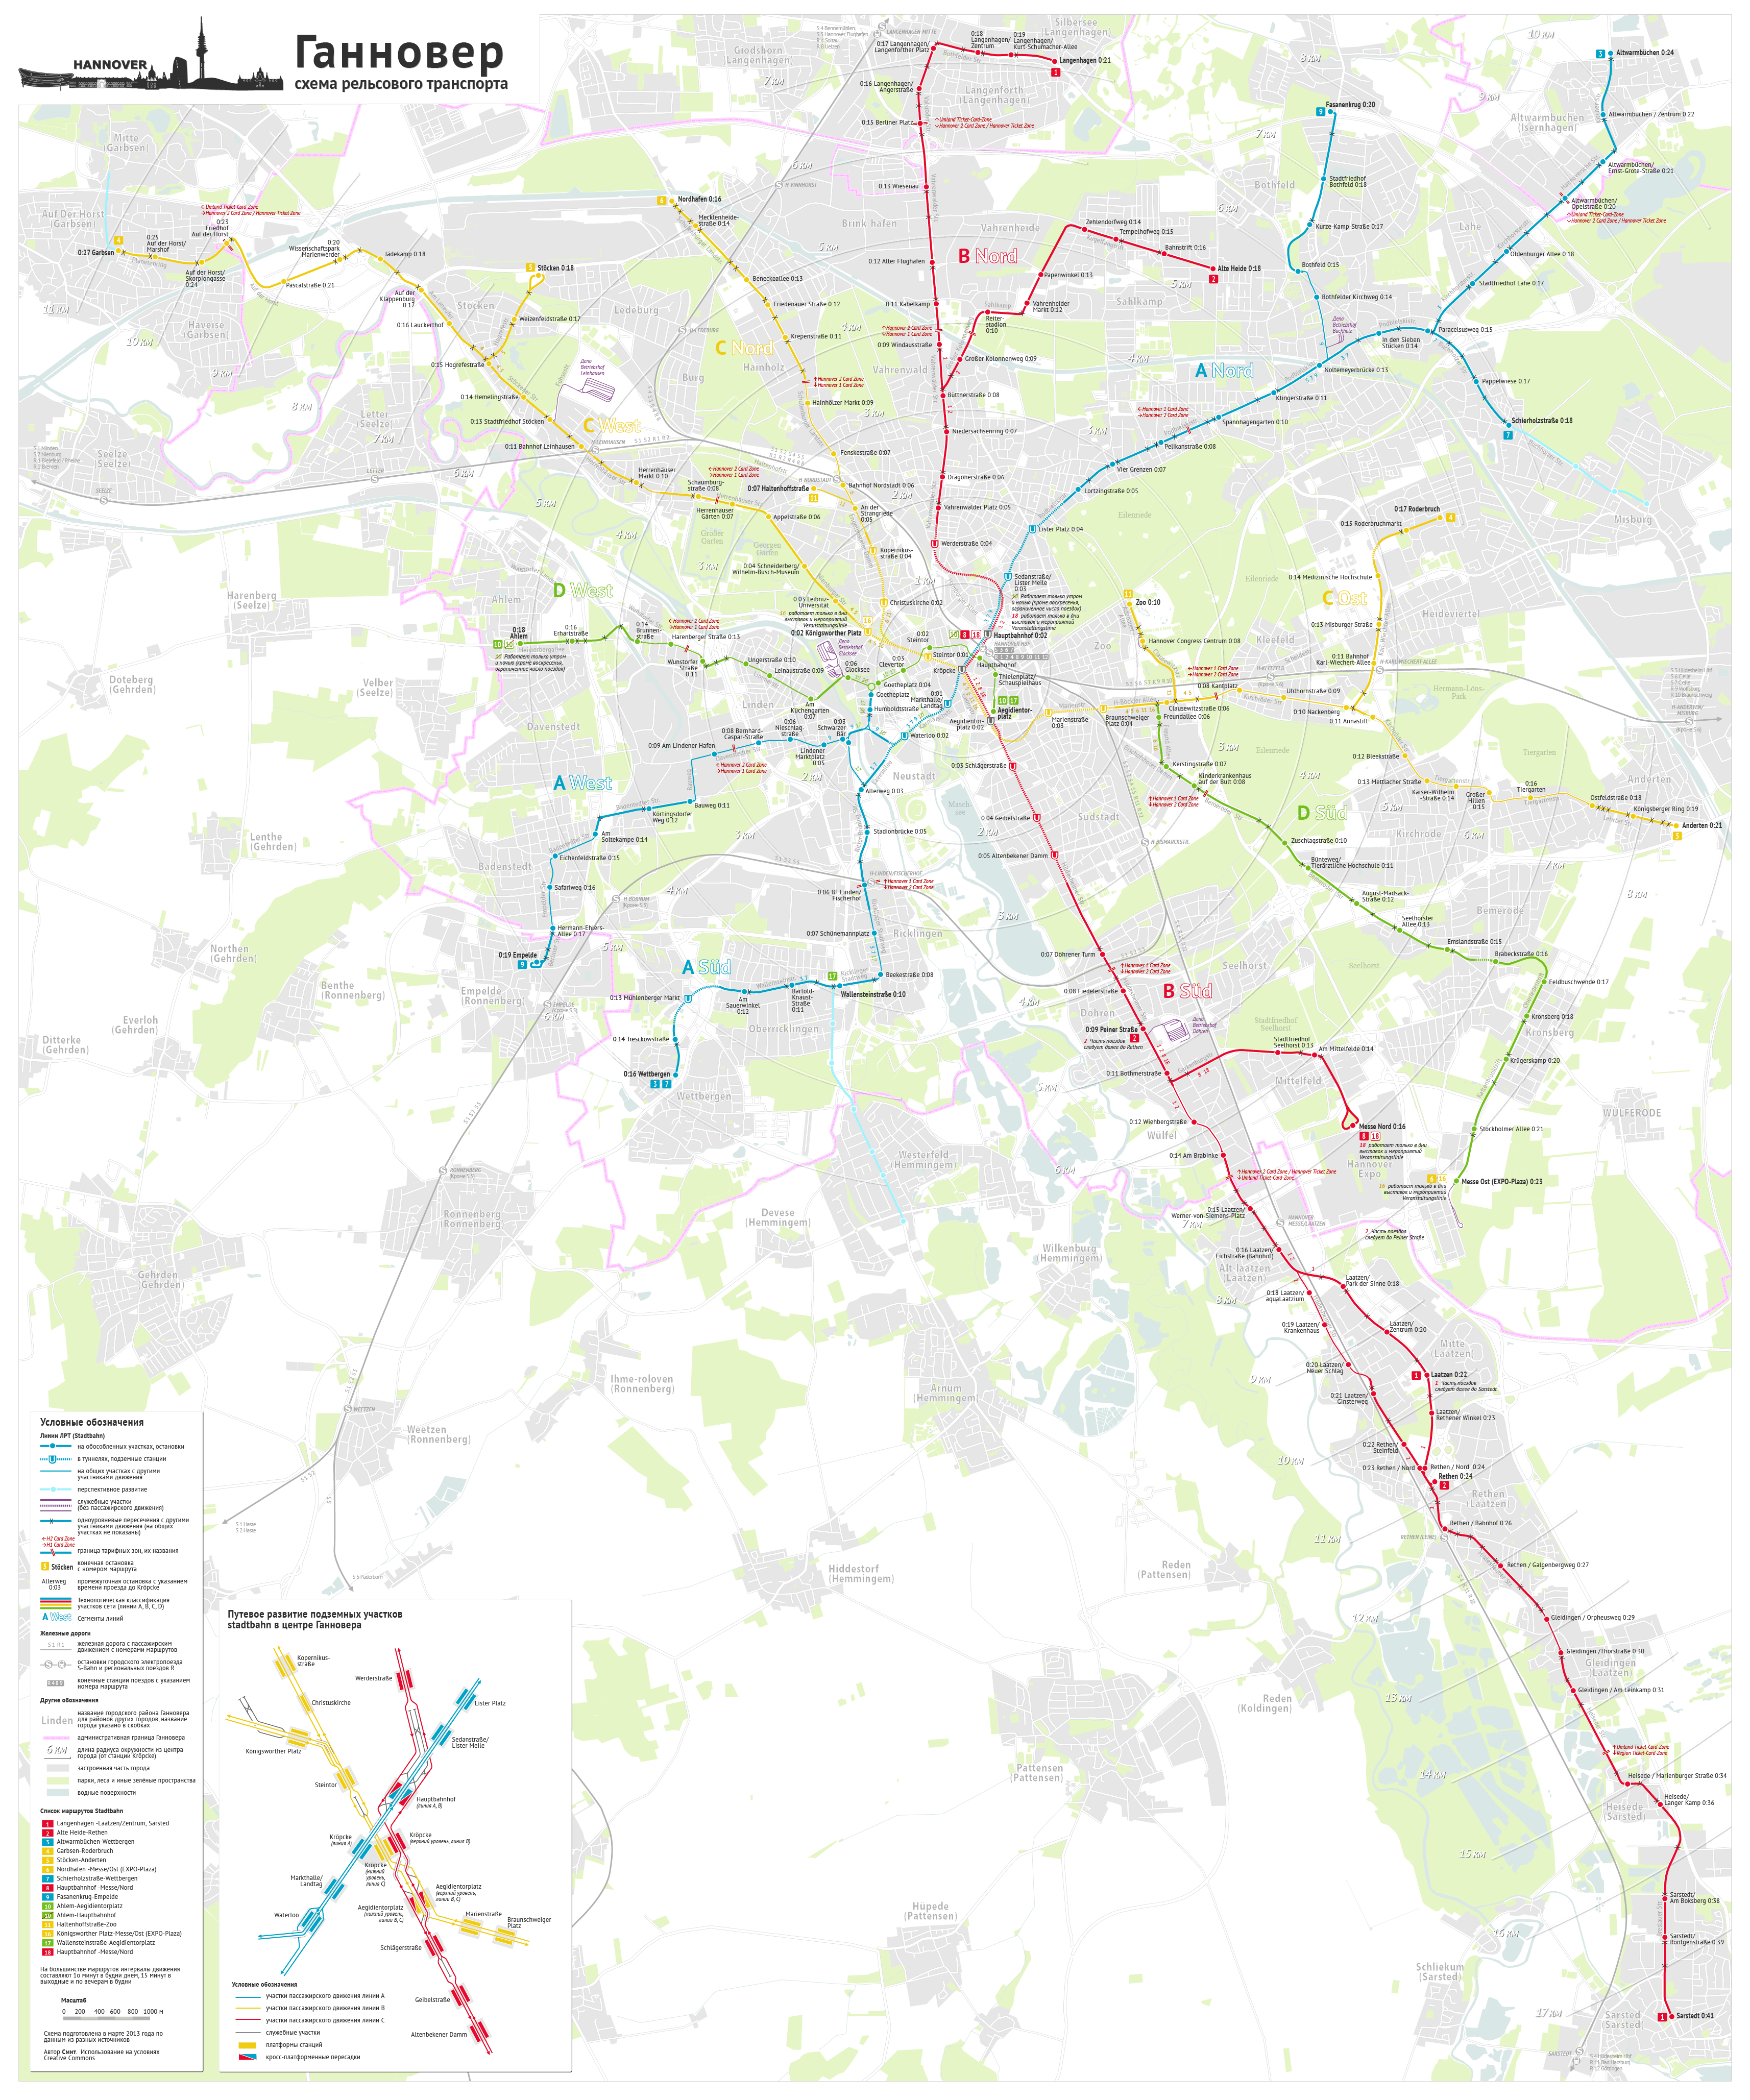 Карты, созданные с использованием OpenStreetMap; Ганновер — Схемы